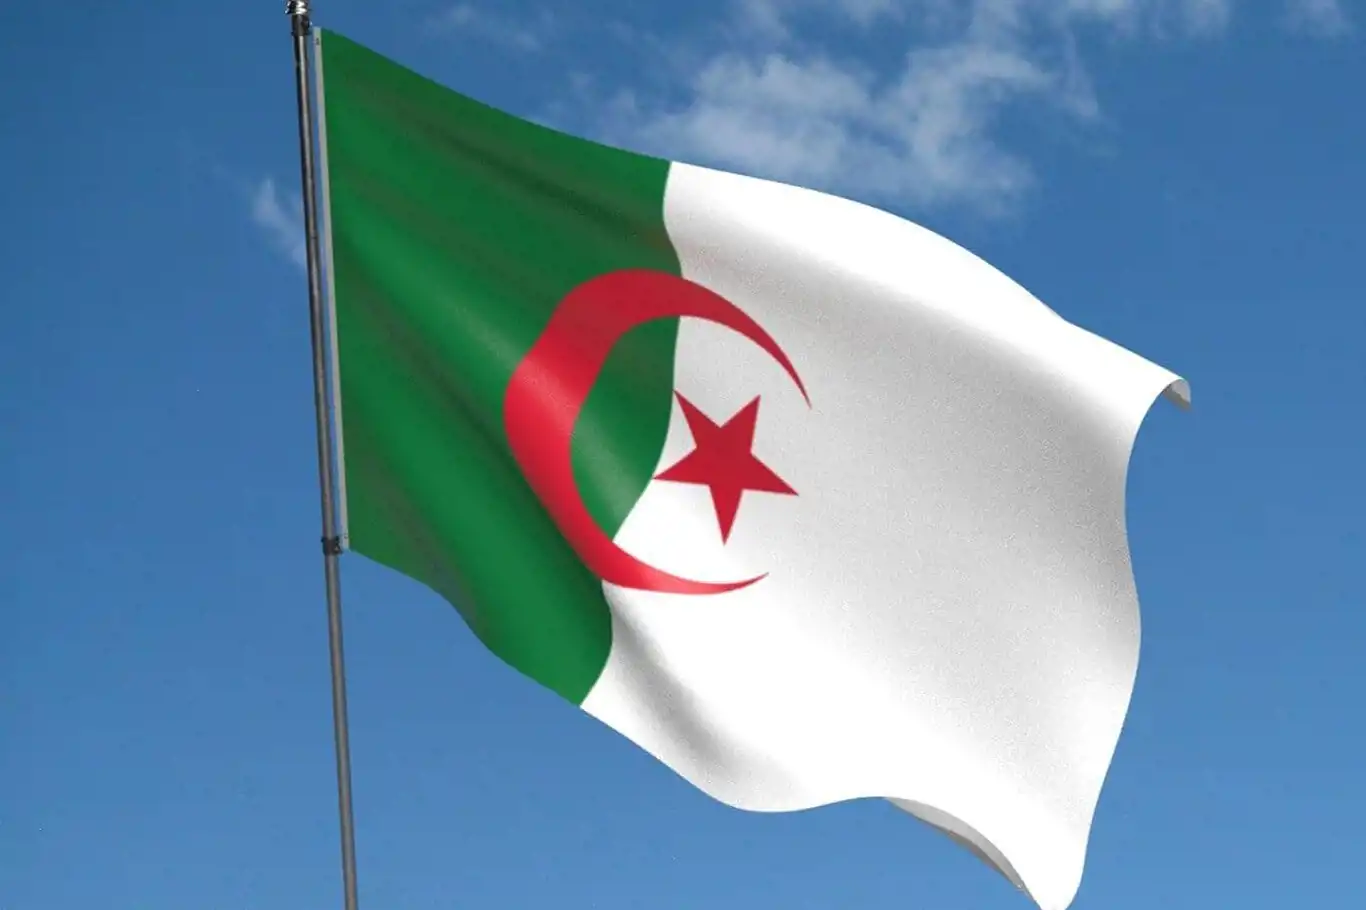 Cezayir'de siyonist rejimin saldırılarından dolayı tüm sportif faaliyetler askıya alındı